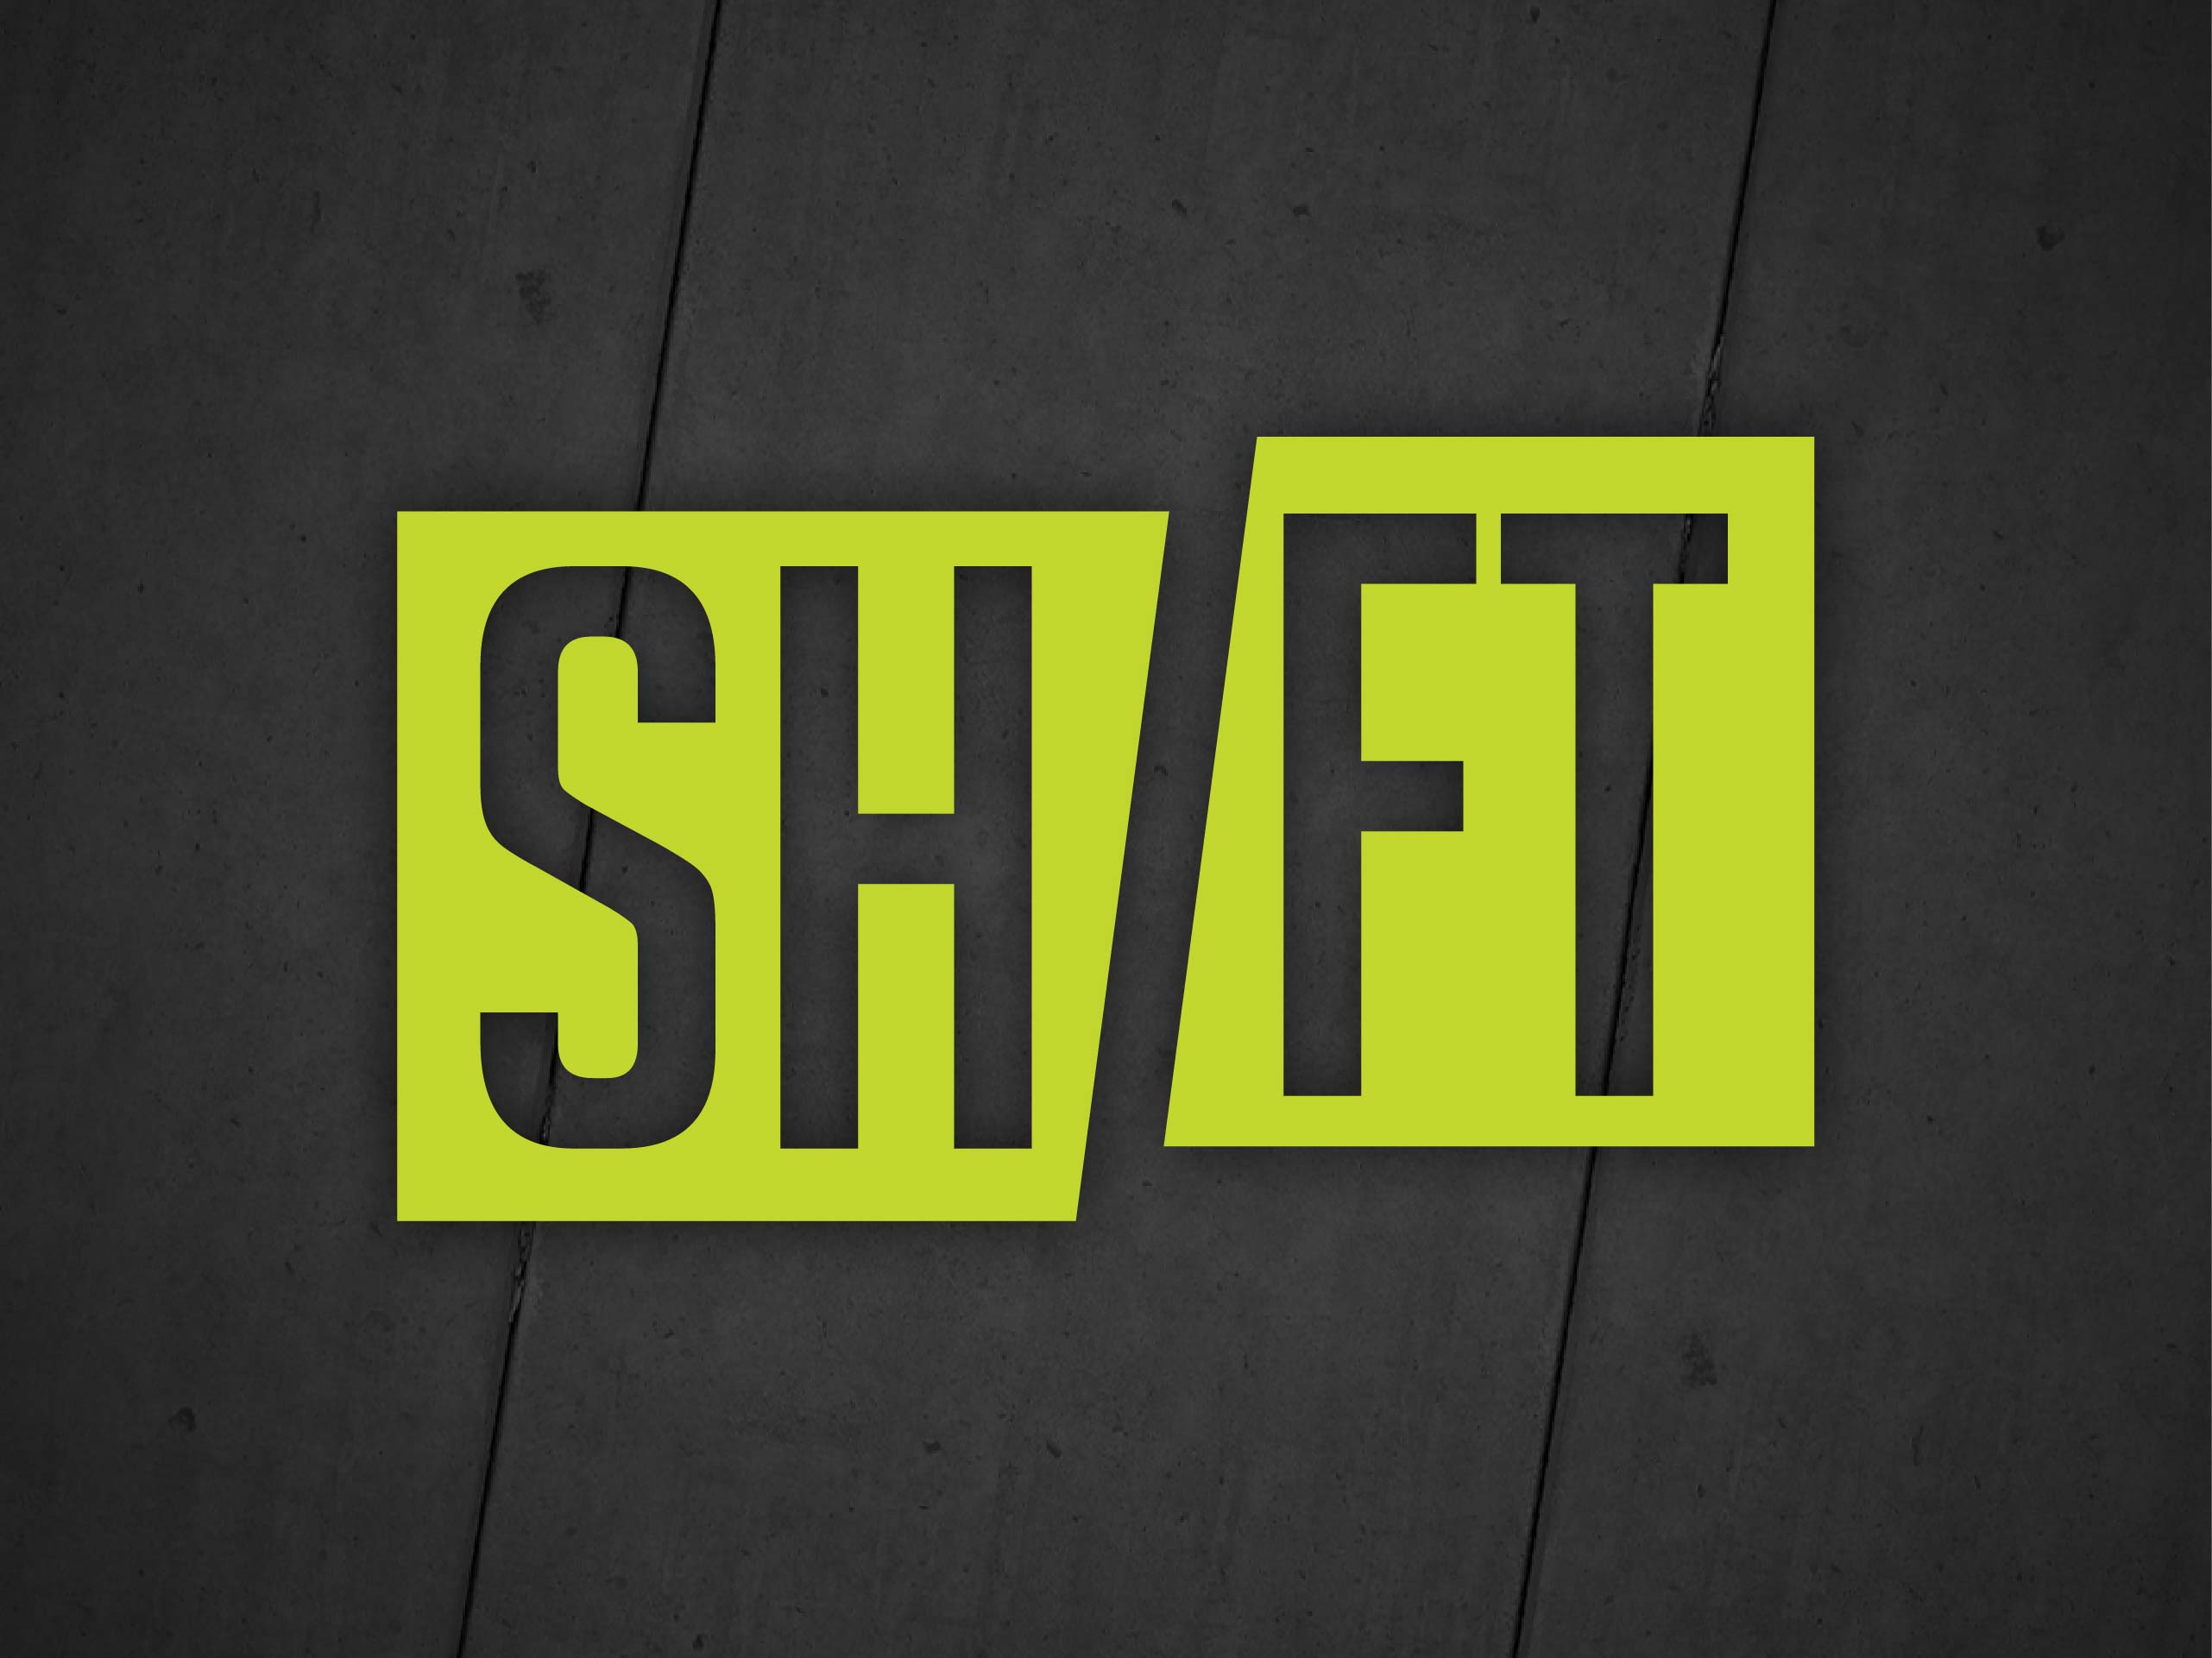 Shift (Part 3)